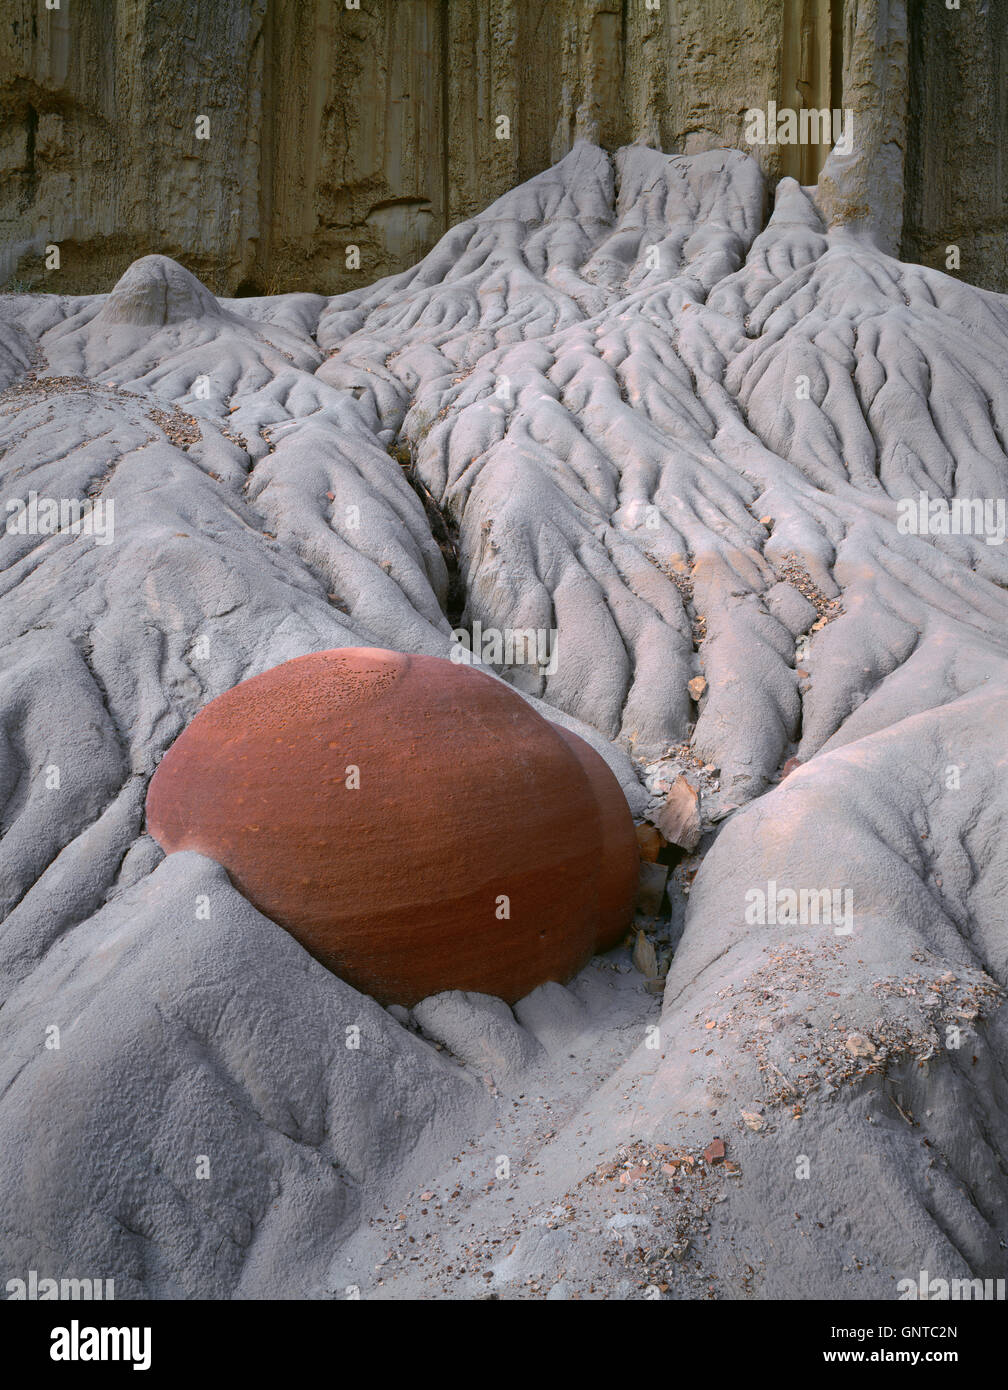 Estados Unidos, Dakota del Norte, el Parque Nacional Theodore Roosevelt, un resistente a la erosión concreción se expone como los sedimentos blandos erosionan. Foto de stock